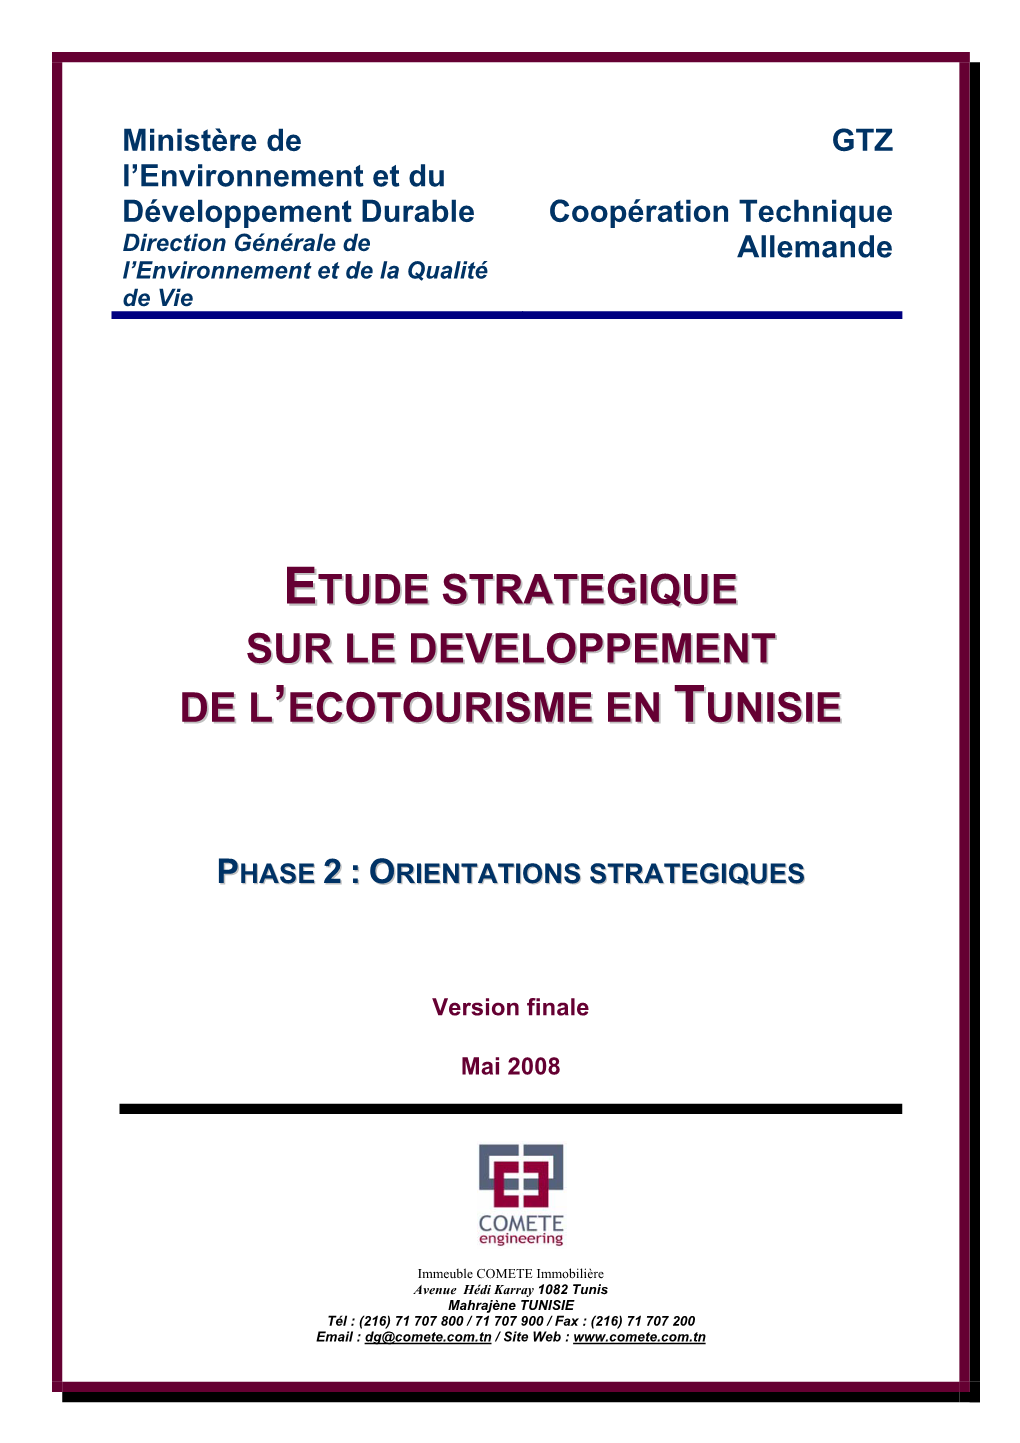 Etude Strategique Sur Le Developpement De L 'Ecotourisme En Tunisie